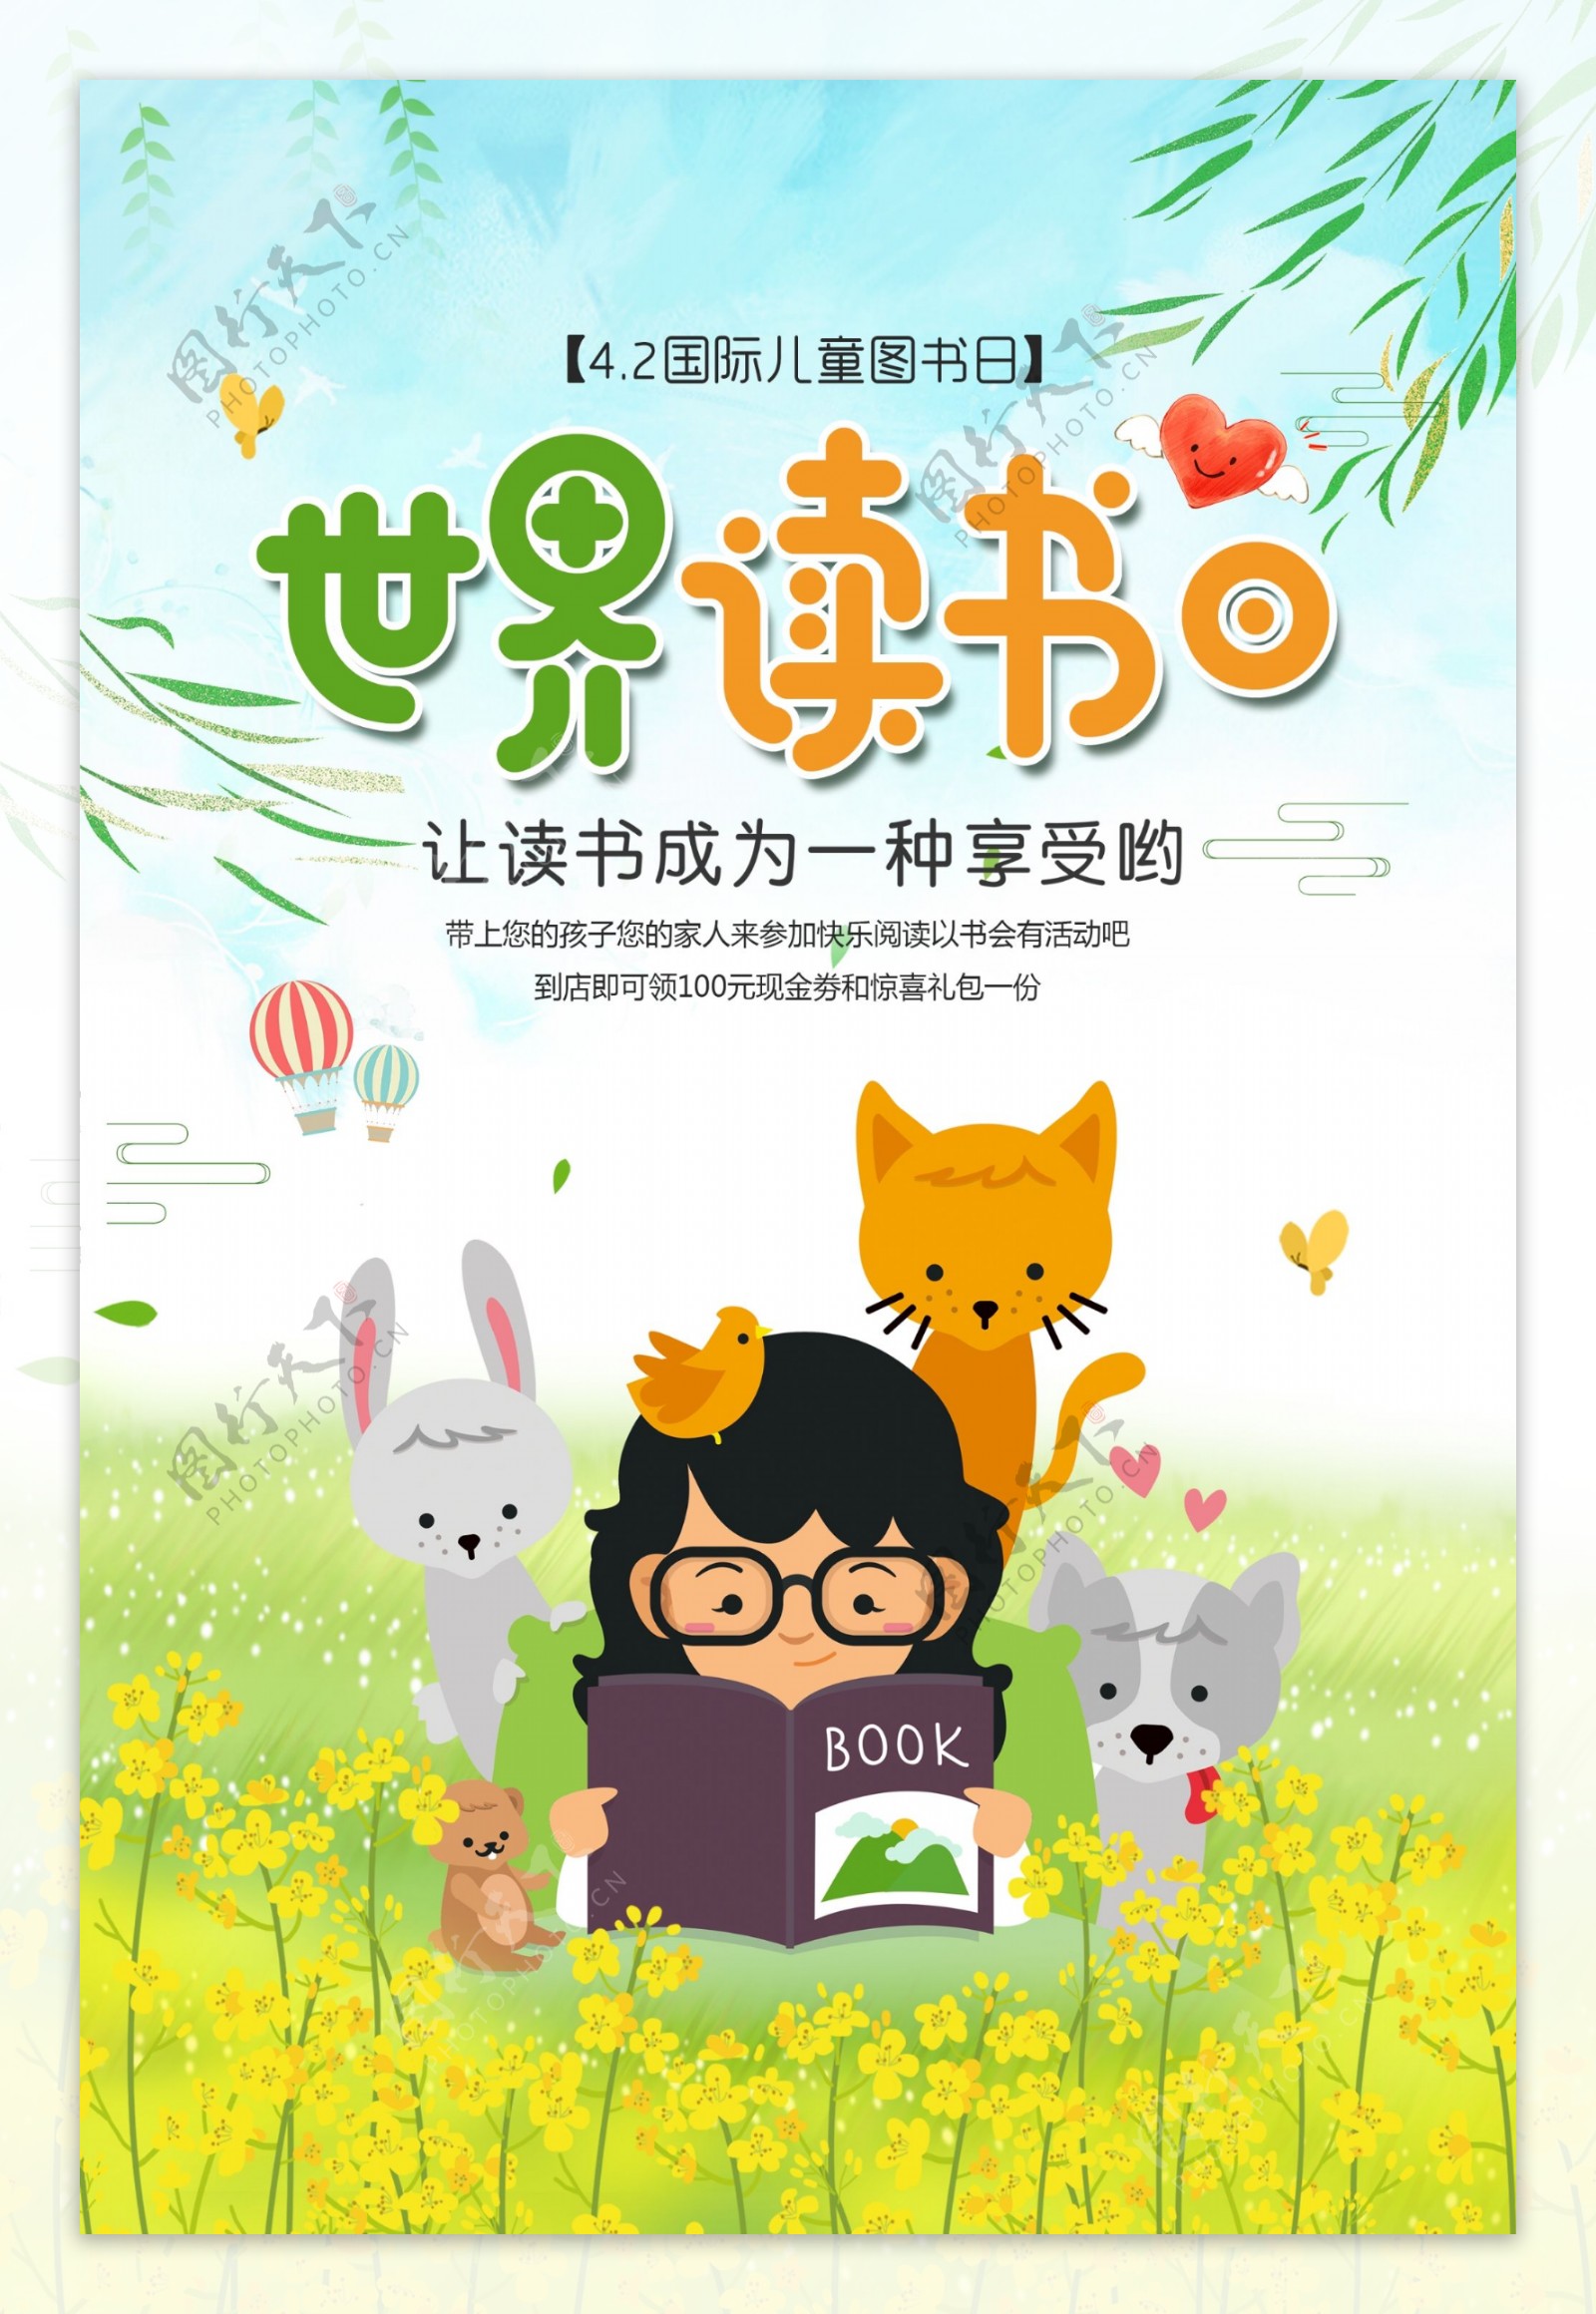 绿色清新4.23世界读书日海报